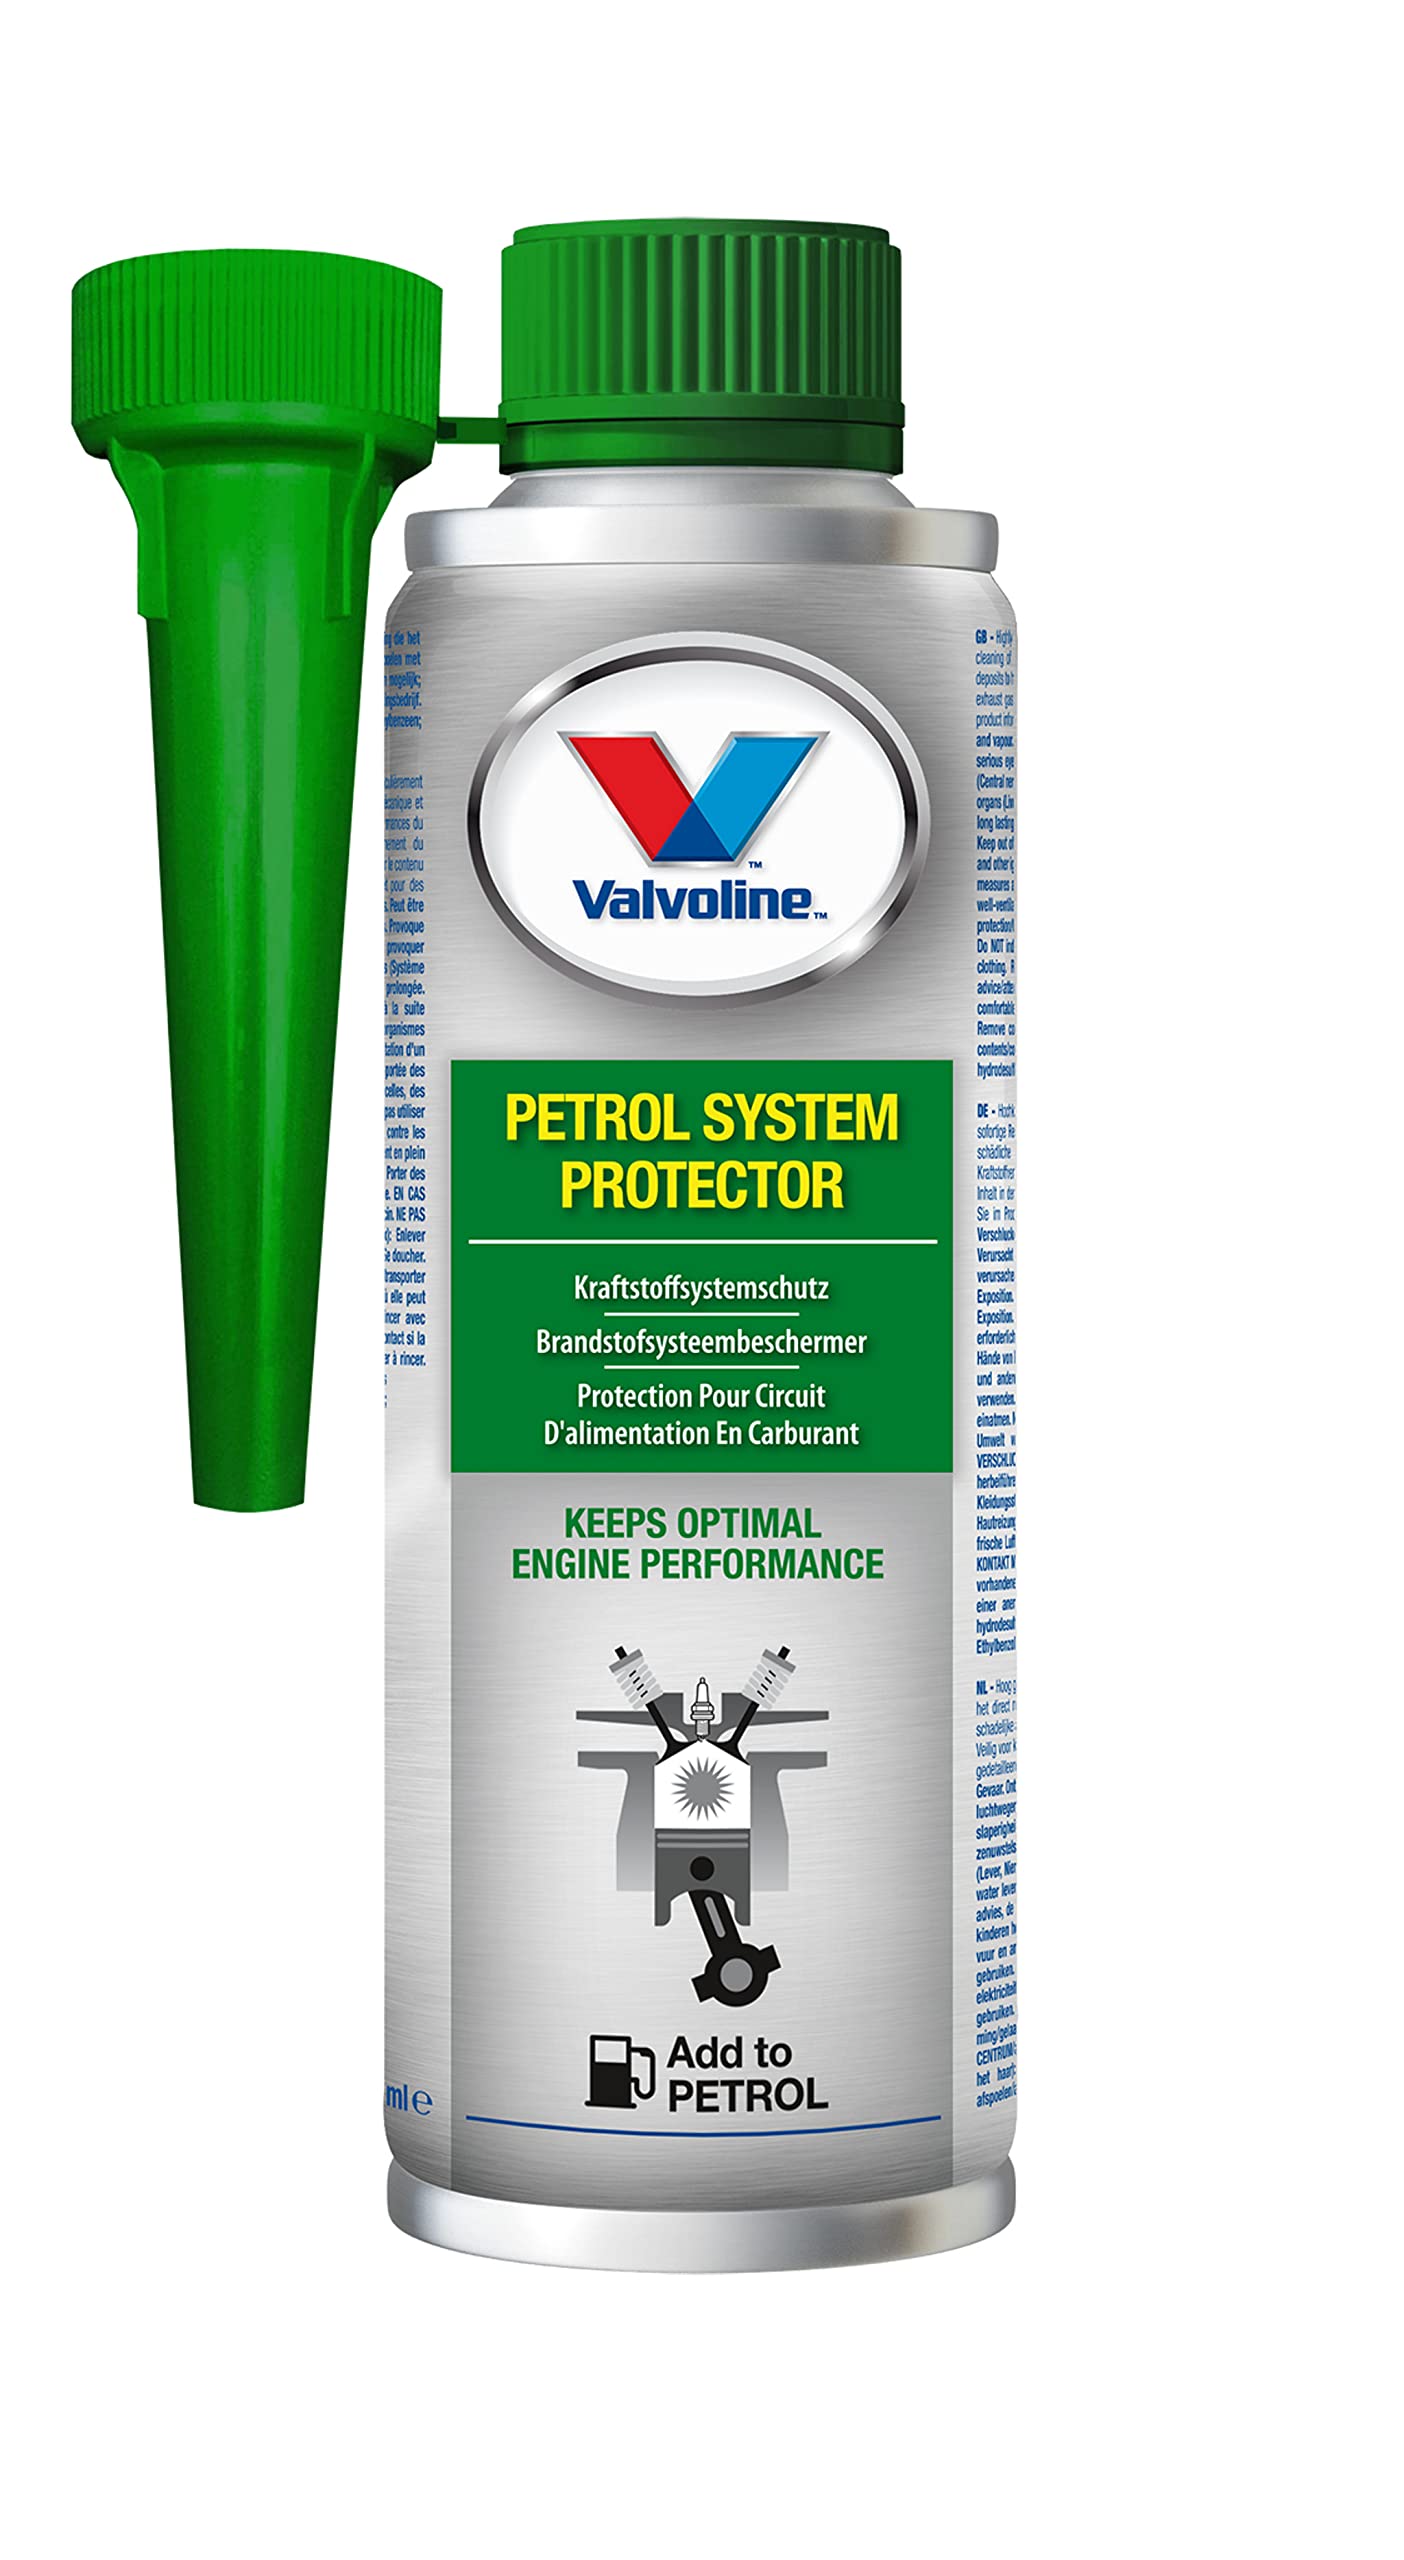 Valvoline 300 Milliliter Kraftstoffsystemschutz Petrol System Protector | reinigt wirksam alle Bauteile des Kraftstoffsystems von Valvoline